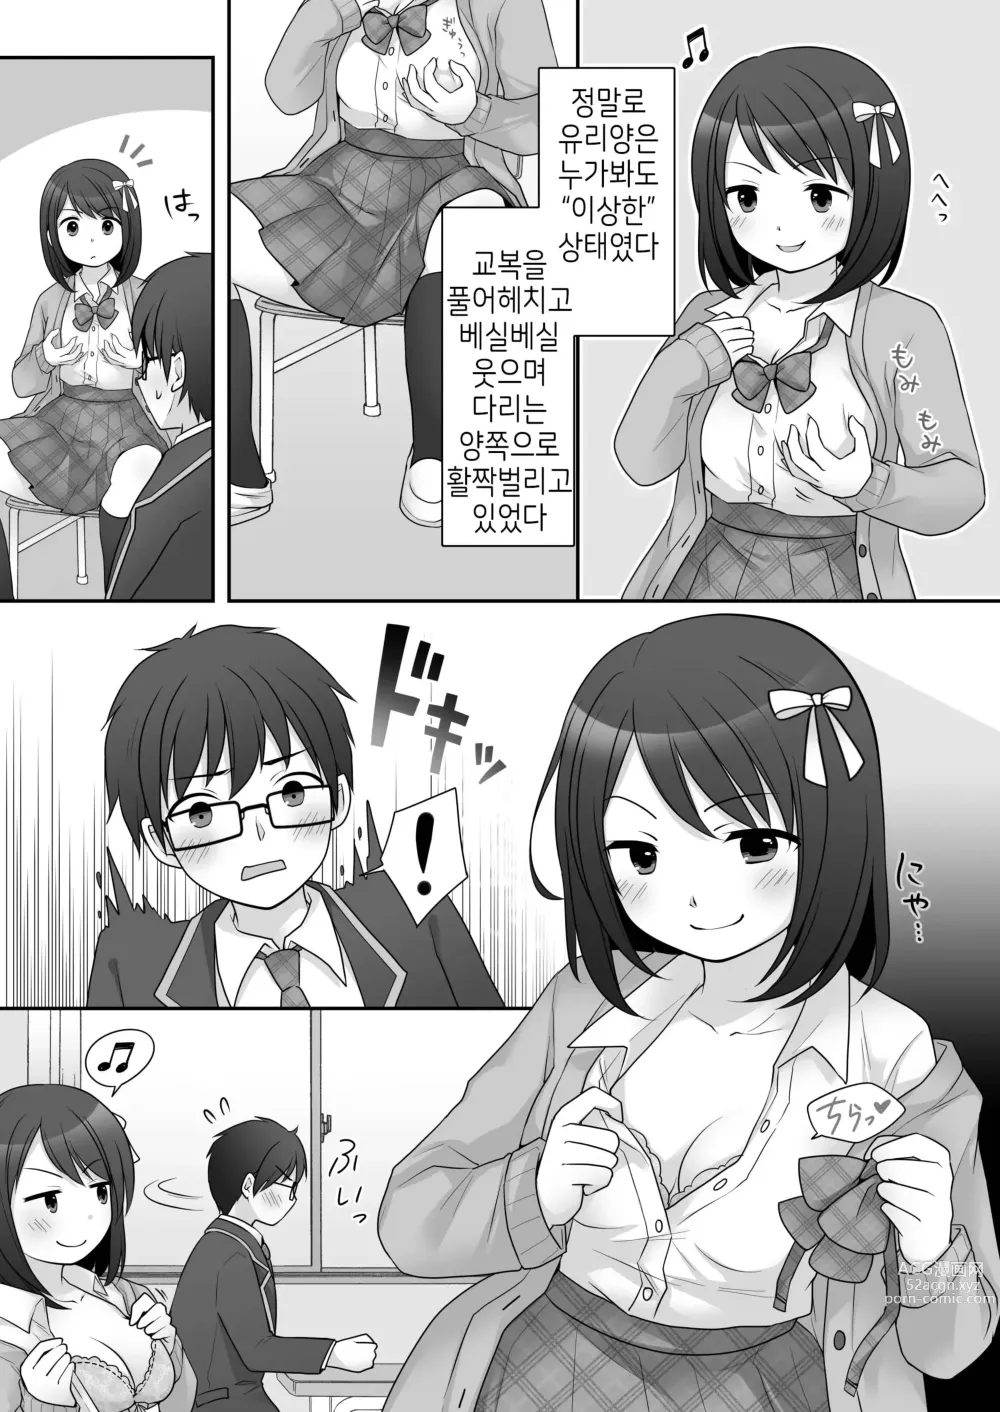 Page 9 of doujinshi 불량 in 그녀 내 여자친구의 몸뚱이는 불량남에게 납치되었다.